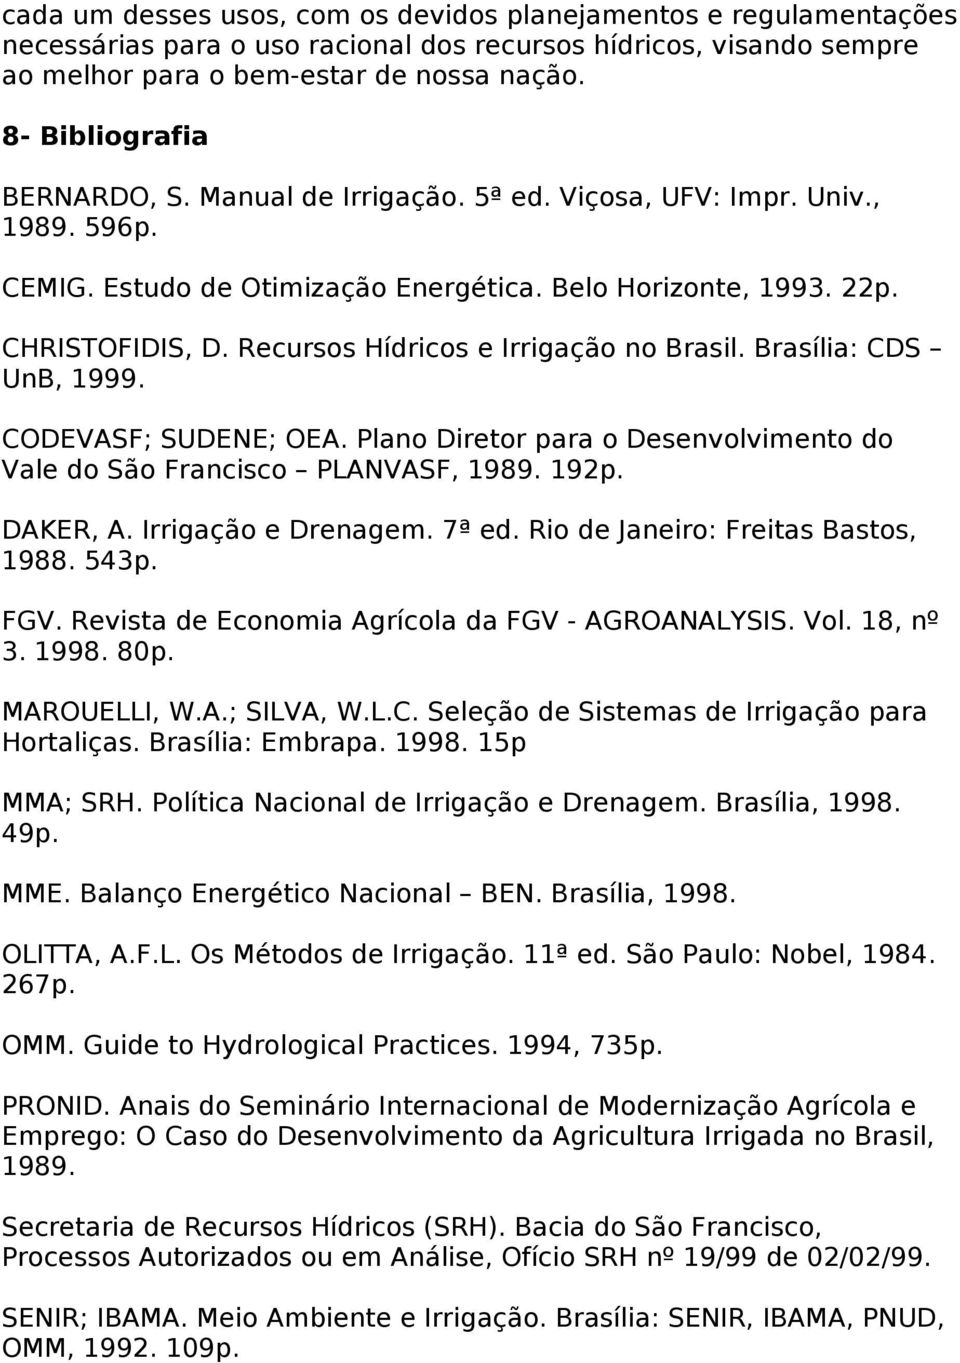 Recursos Hídricos e Irrigação no Brasil. Brasília: CDS UnB, 99. CODEVASF; SUDENE; OEA. Plano Diretor para o Desenvolvimento do Vale do São Francisco PLANVASF, 89. 2p. DAKER, A. Irrigação e Drenagem.